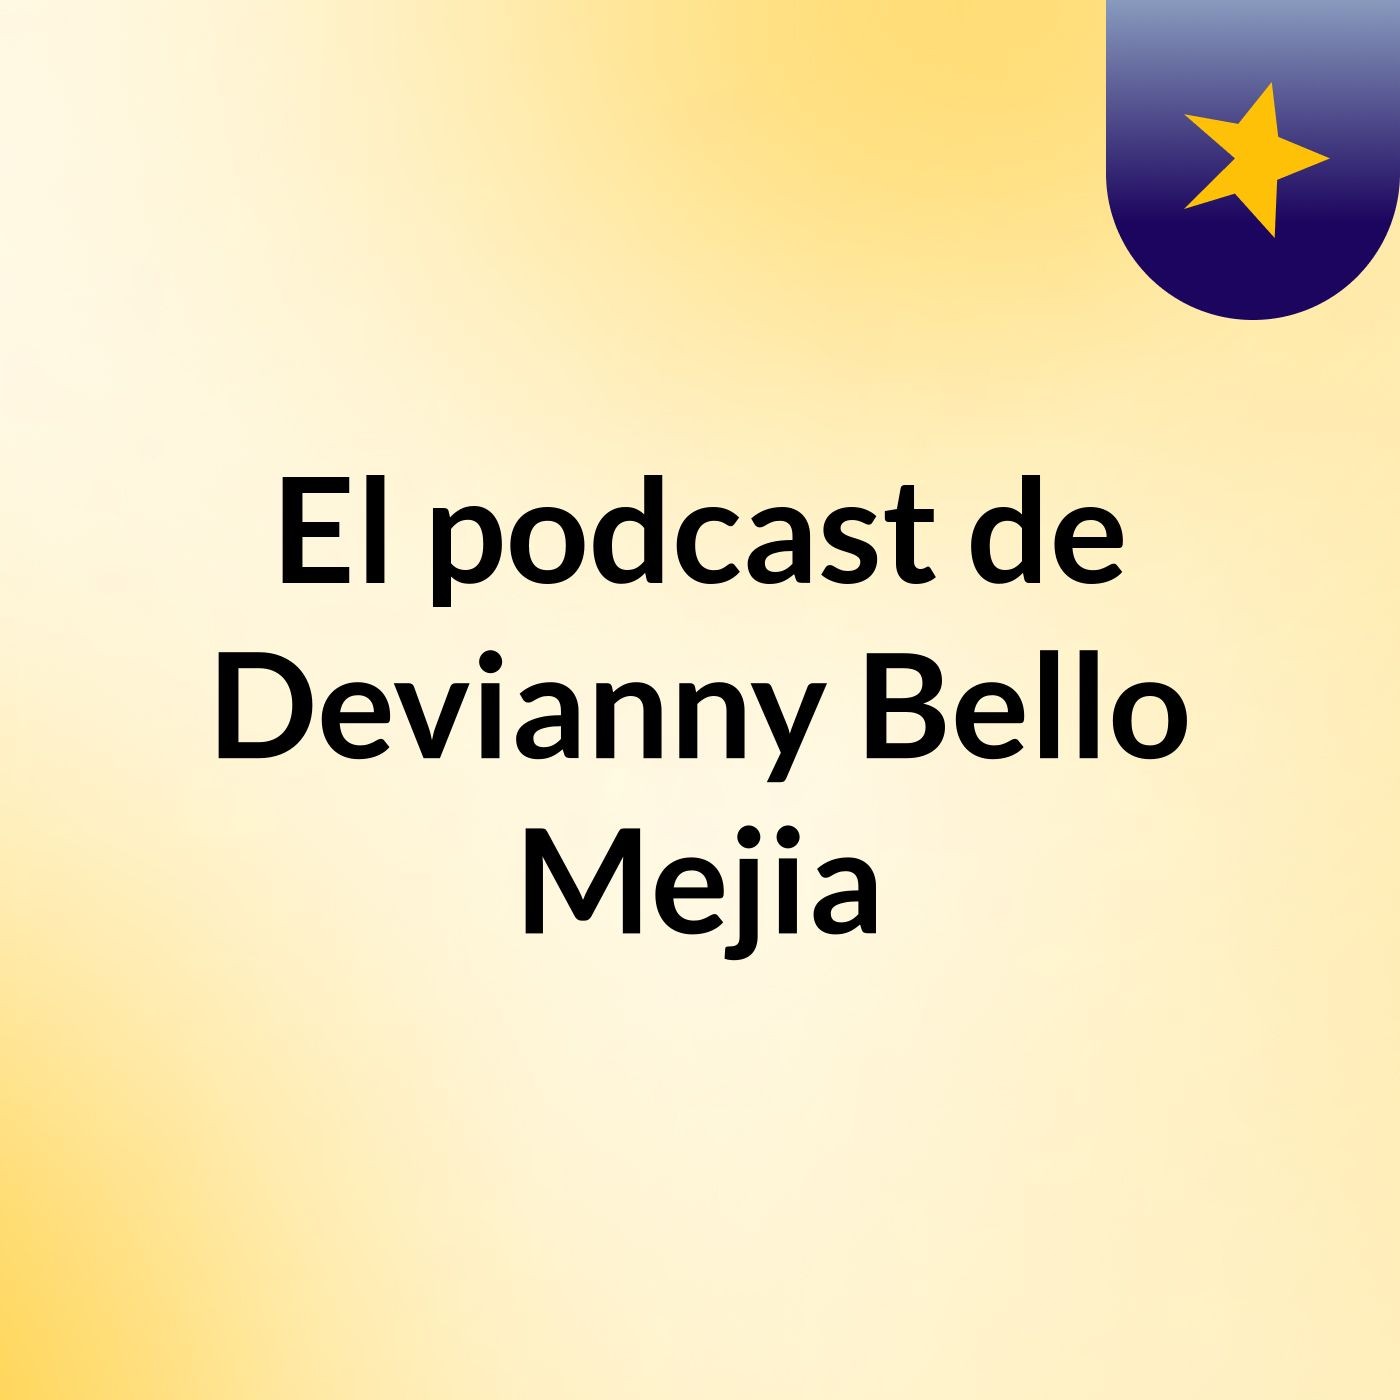 El podcast de Devianny Bello Mejia